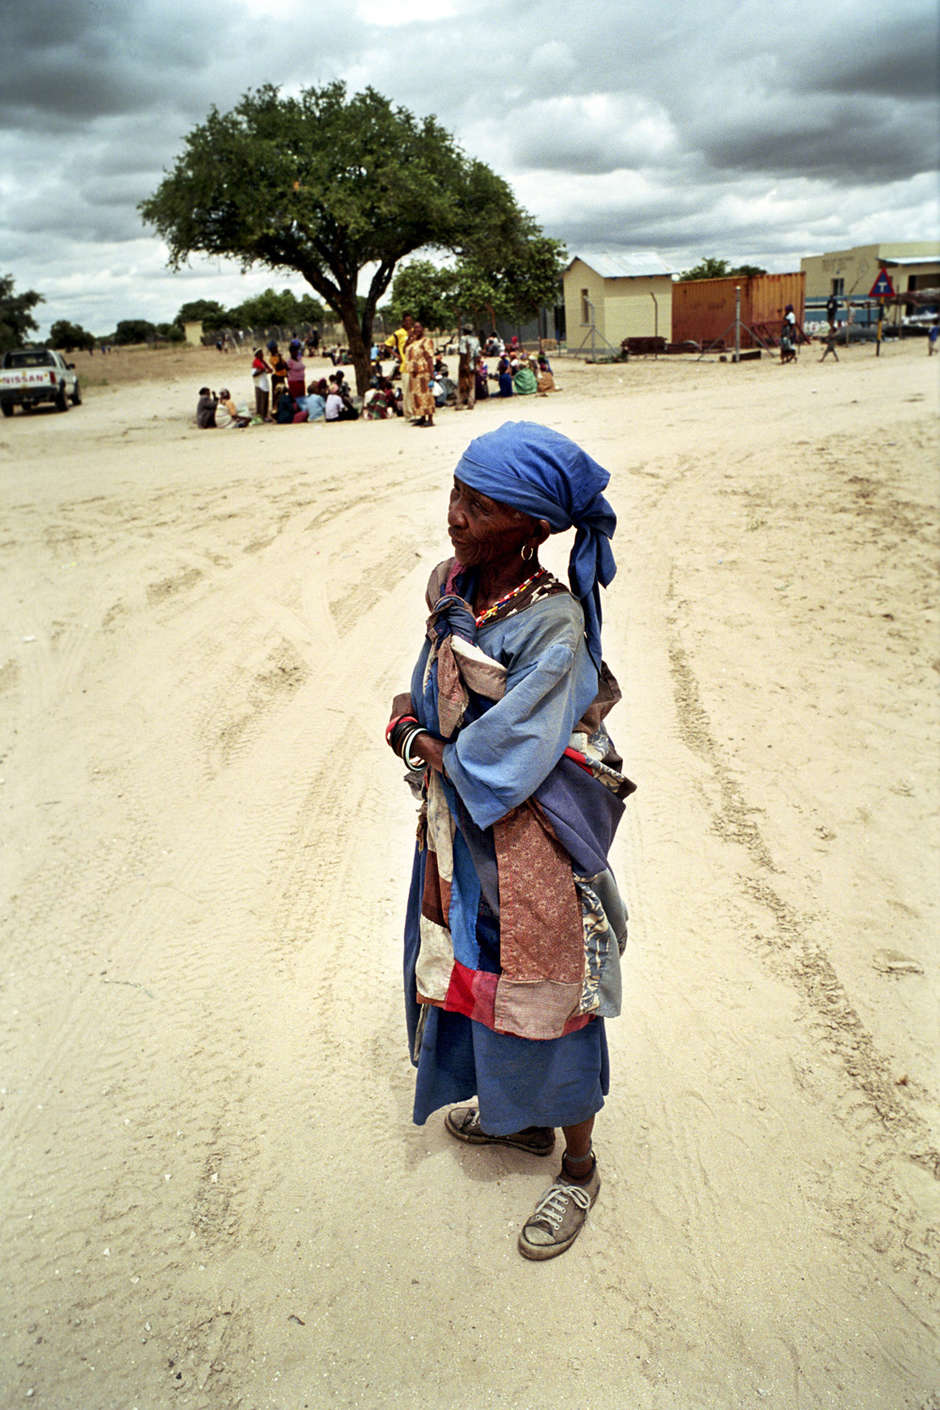 Una mujer bosquimana en una calle de de Nuevo Xade, en Botsuana, un campo de reasentamiento del Gobierno en el que instalaron a muchos bosquimanos antes de 2006.

Durante las expulsiones forzosas, sus casas tradicionales fueron derribadas, sus clínicas y escuelas clausuradas, y el pozo que habían usado hasta entonces destruido, derramando el agua en la arena.

“Si fuera a un ministro y le dijéramos ‘vete de tu tierra’, pensaría que estoy loco”, dijo un bosquimano.

Y sin embargo eso es exactamente lo que les ocurrió a los pueblos que una vez habitaron el territorio desde la cuenca del Zambezi al Cabo.

El Gobierno de Botsuana dice que los bosquimanos deben abandonar lo que ellos califican de una vida miserable “entre los animales”, para poder “alcanzar” el desarrollo del resto del país. También han afirmado que la presencia de los bosquimanos en la reserva no es compatible con la preservación de la vida salvaje.

“Debemos sacarlos de la situación en la que se encuentran”, dijo el ministro de Exteriores. “A todos debería preocuparnos que una tribu siga en la naturaleza conviviendo con la flora y la fauna”.

El ex presidente de Botsuana, Festus Mogae, se preguntó: “¿Cómo puede una criatura de la Edad de Piedra existir en la edad de las computadoras?”